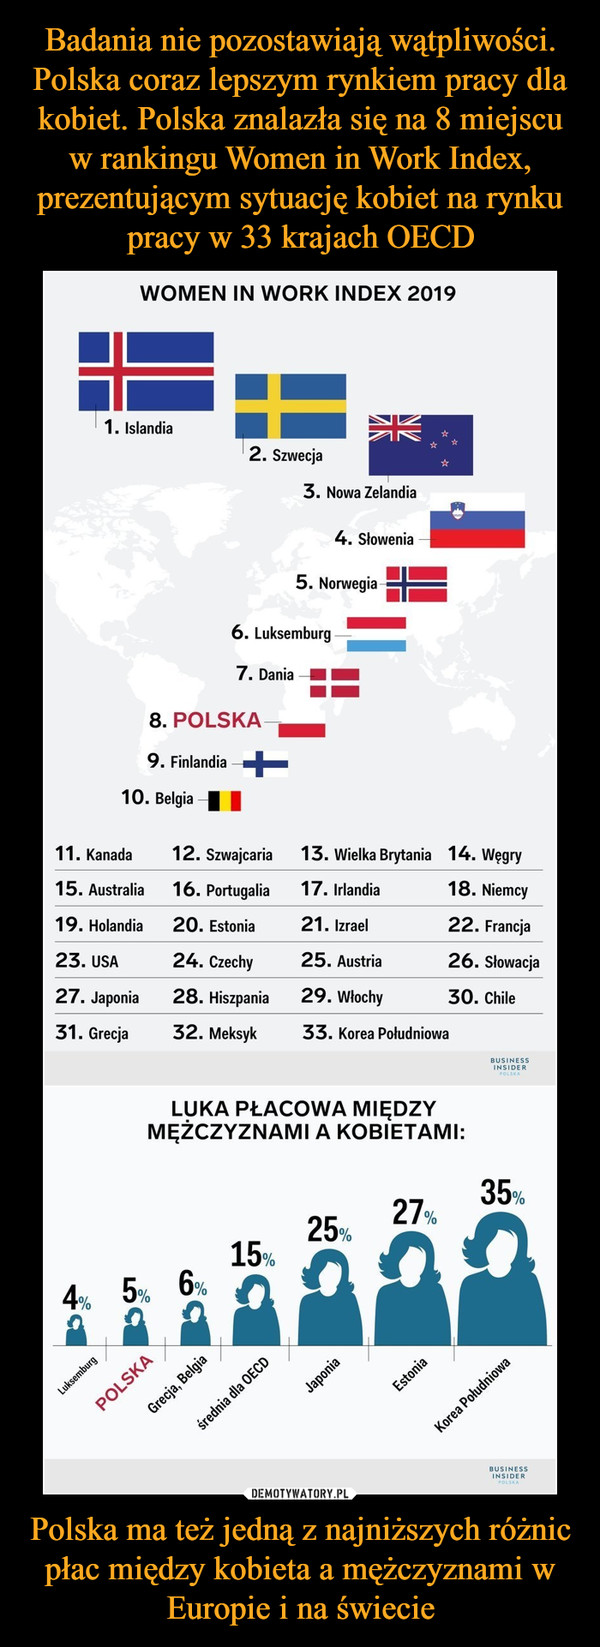 Badania nie pozostawiają wątpliwości. Polska coraz lepszym rynkiem pracy dla kobiet. Polska znalazła się na 8 miejscu w rankingu Women in Work Index, prezentującym sytuację kobiet na rynku pracy w 33 krajach OECD Polska ma też jedną z najniższych różnic płac między kobieta a mężczyznami w Europie i na świecie